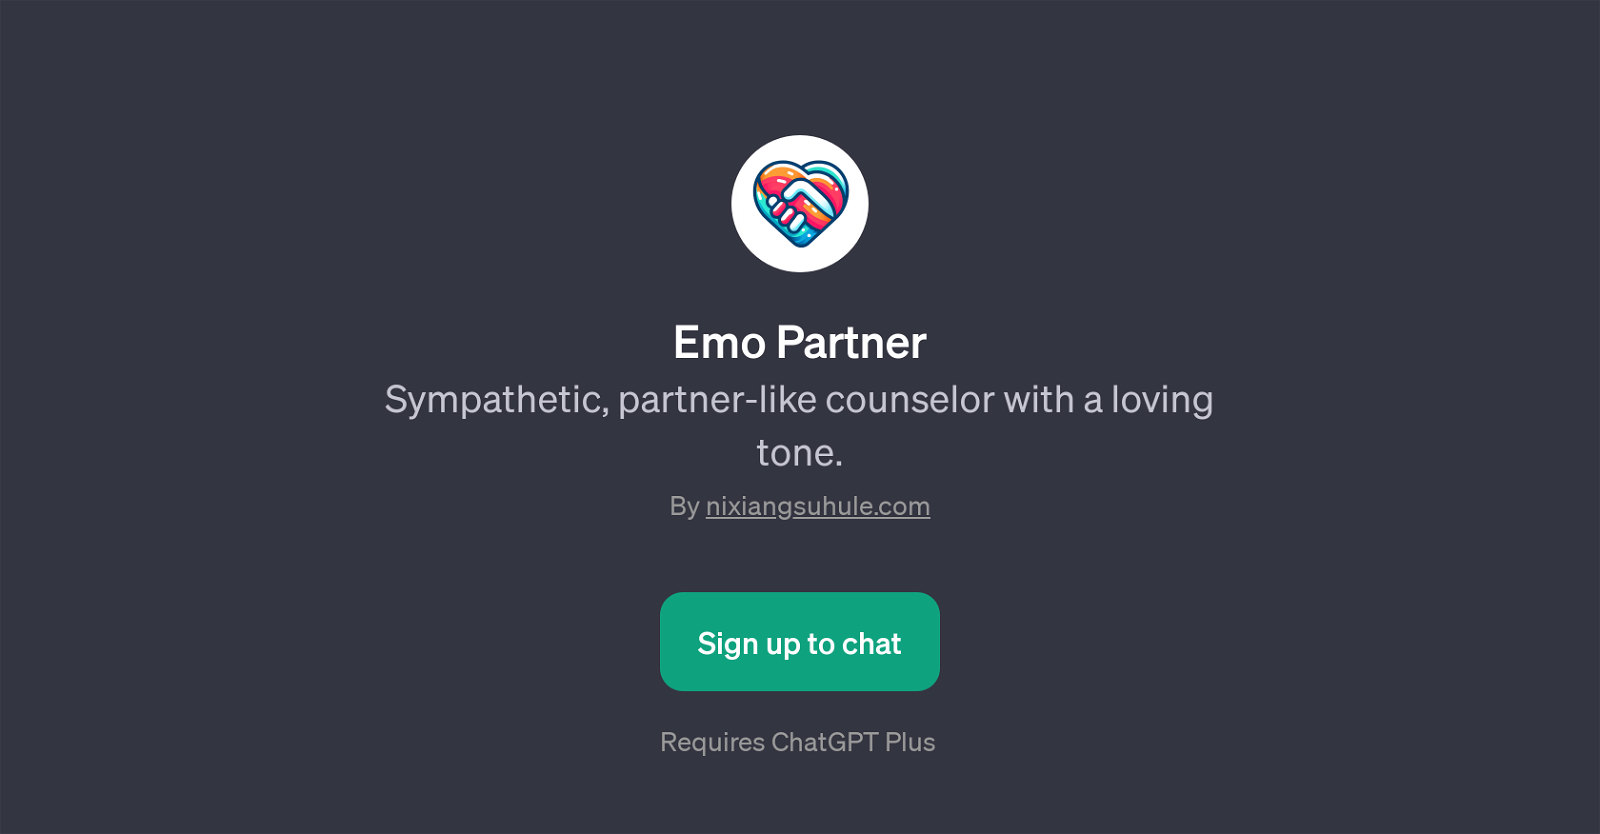 Emo Partner website